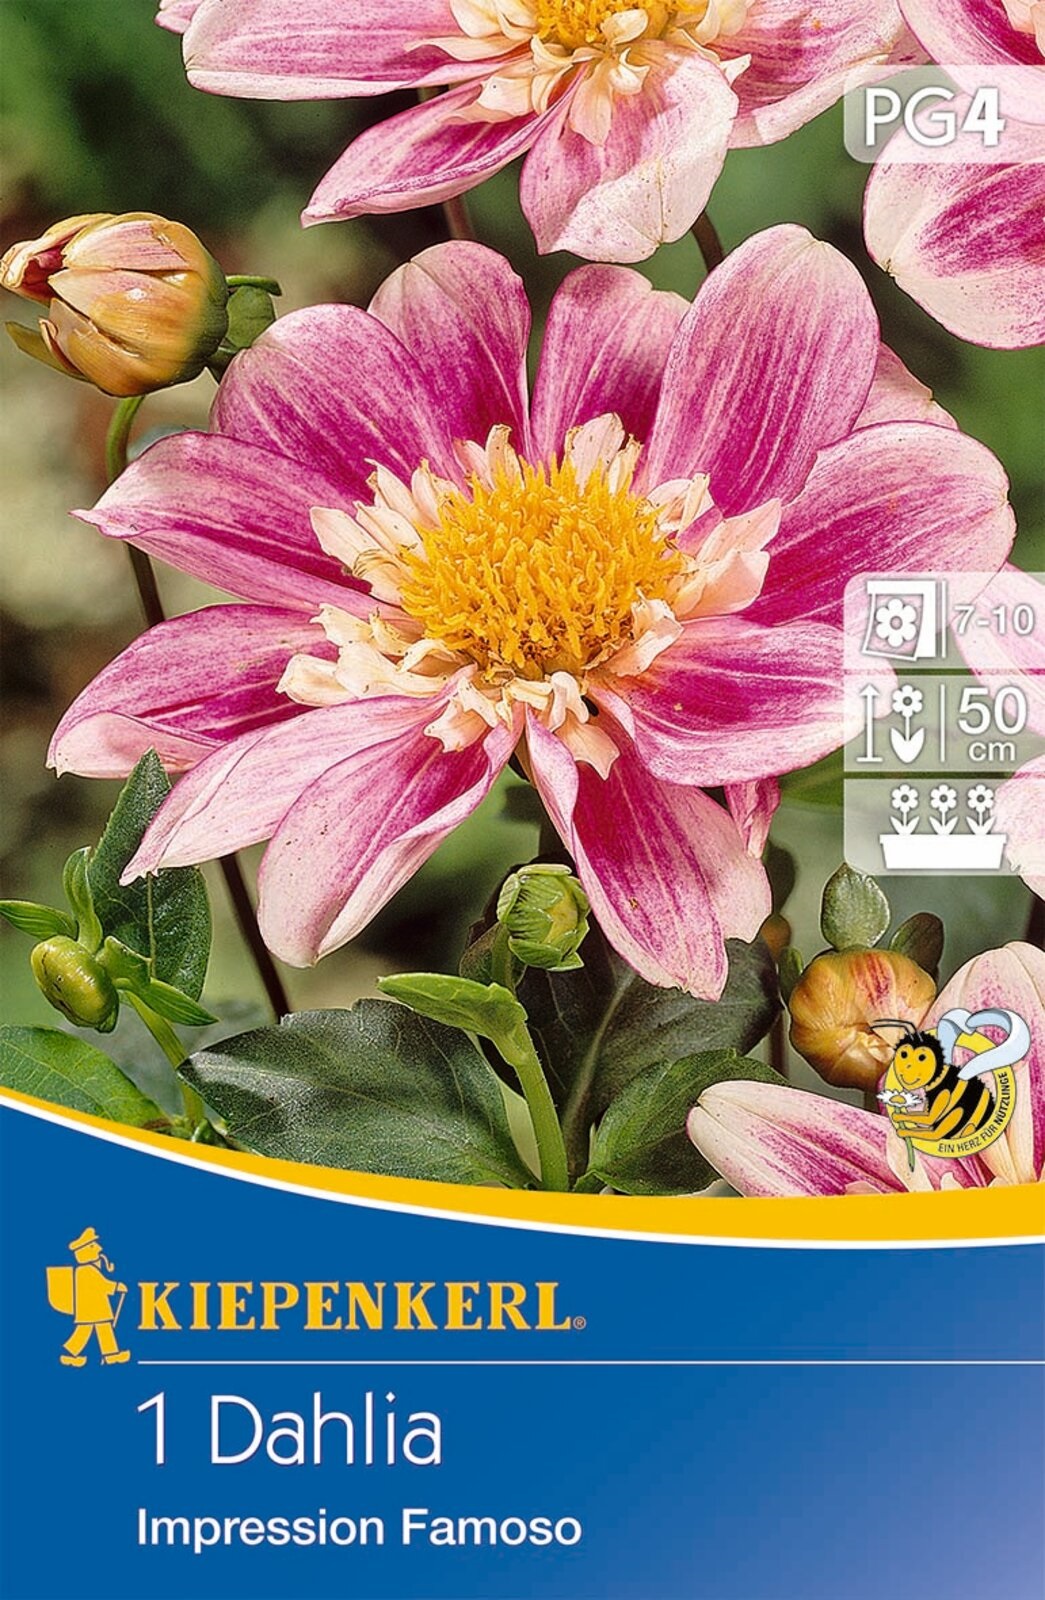 Virághagyma Dália Impression Famoso (rózsaszín) Kiepenkerl 1 db